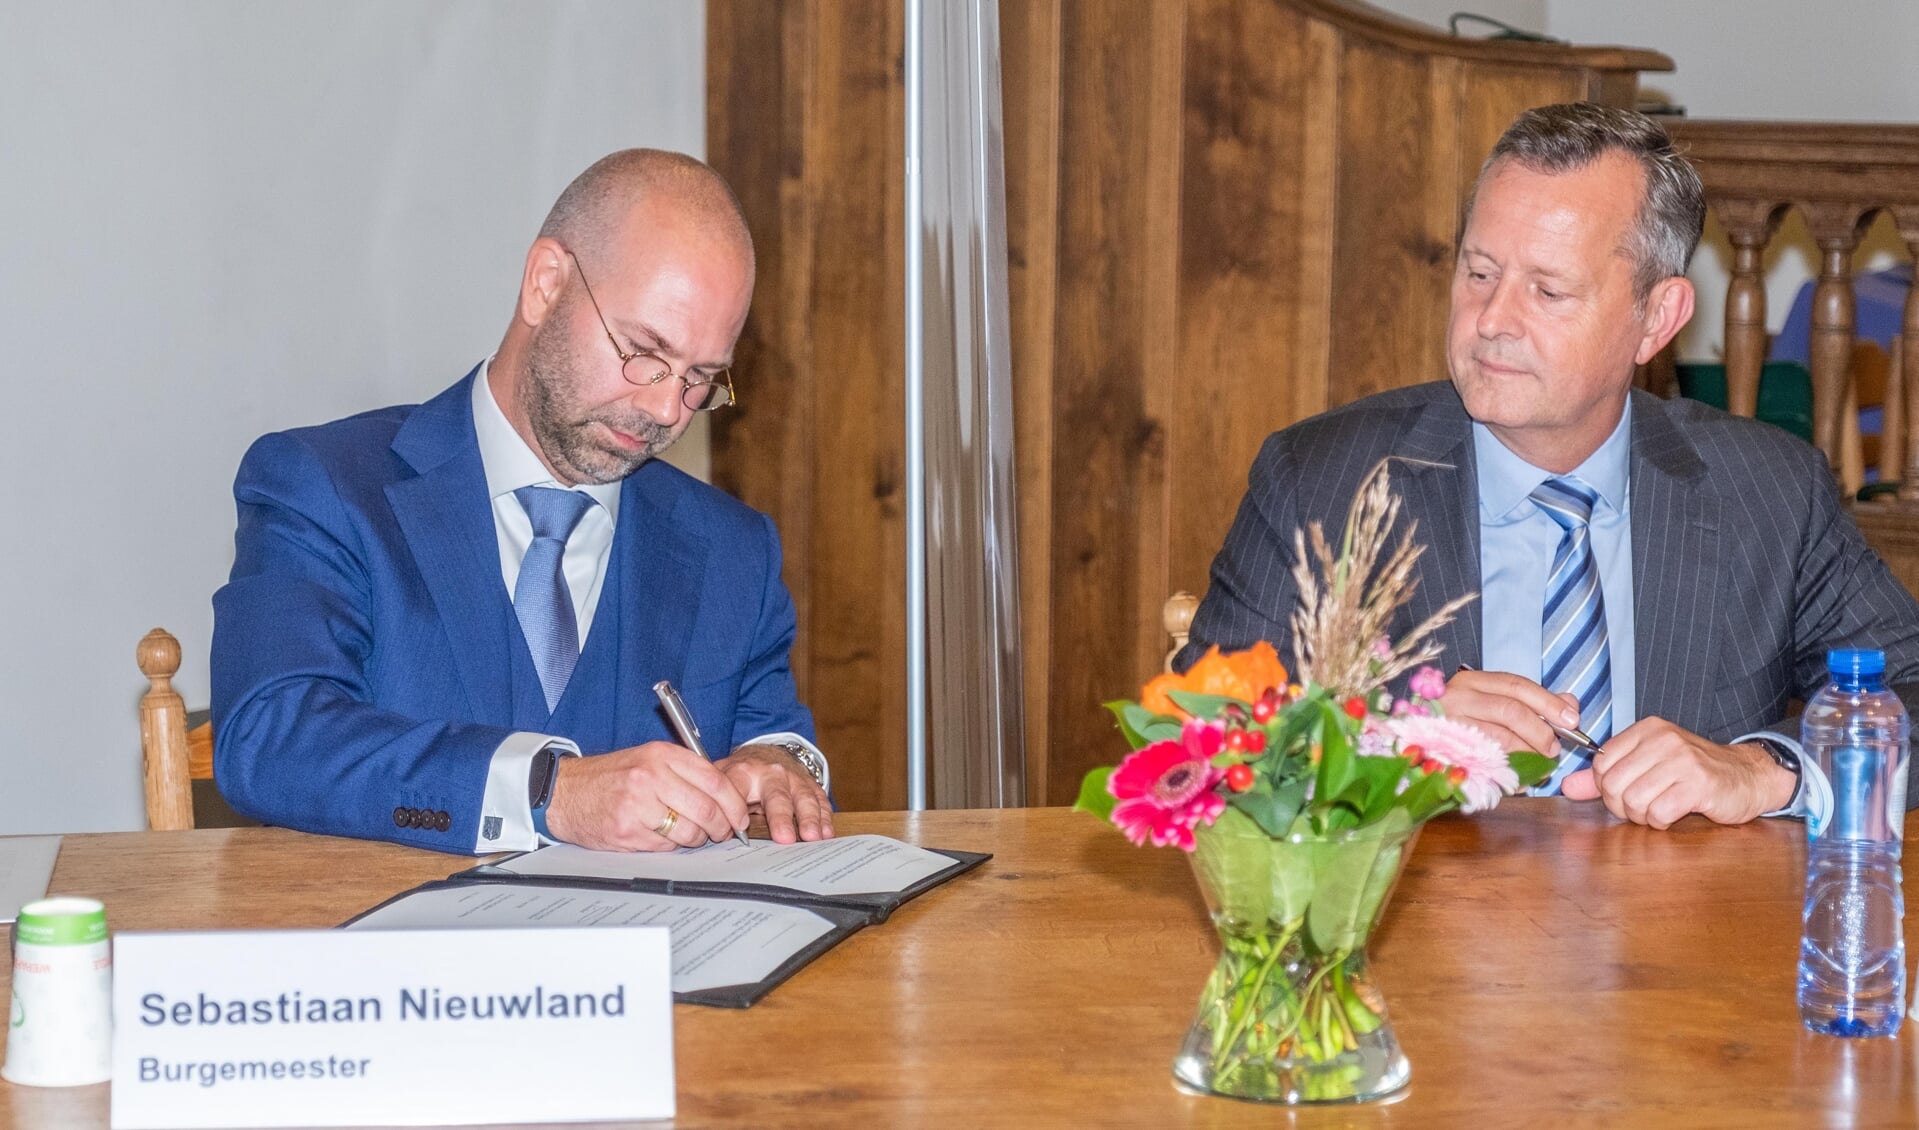 De ondertekening door burgemeester Nieuwland vindt plaats in het bijzijn van A. van Dijk (commissaris van de Koning provincie NH).